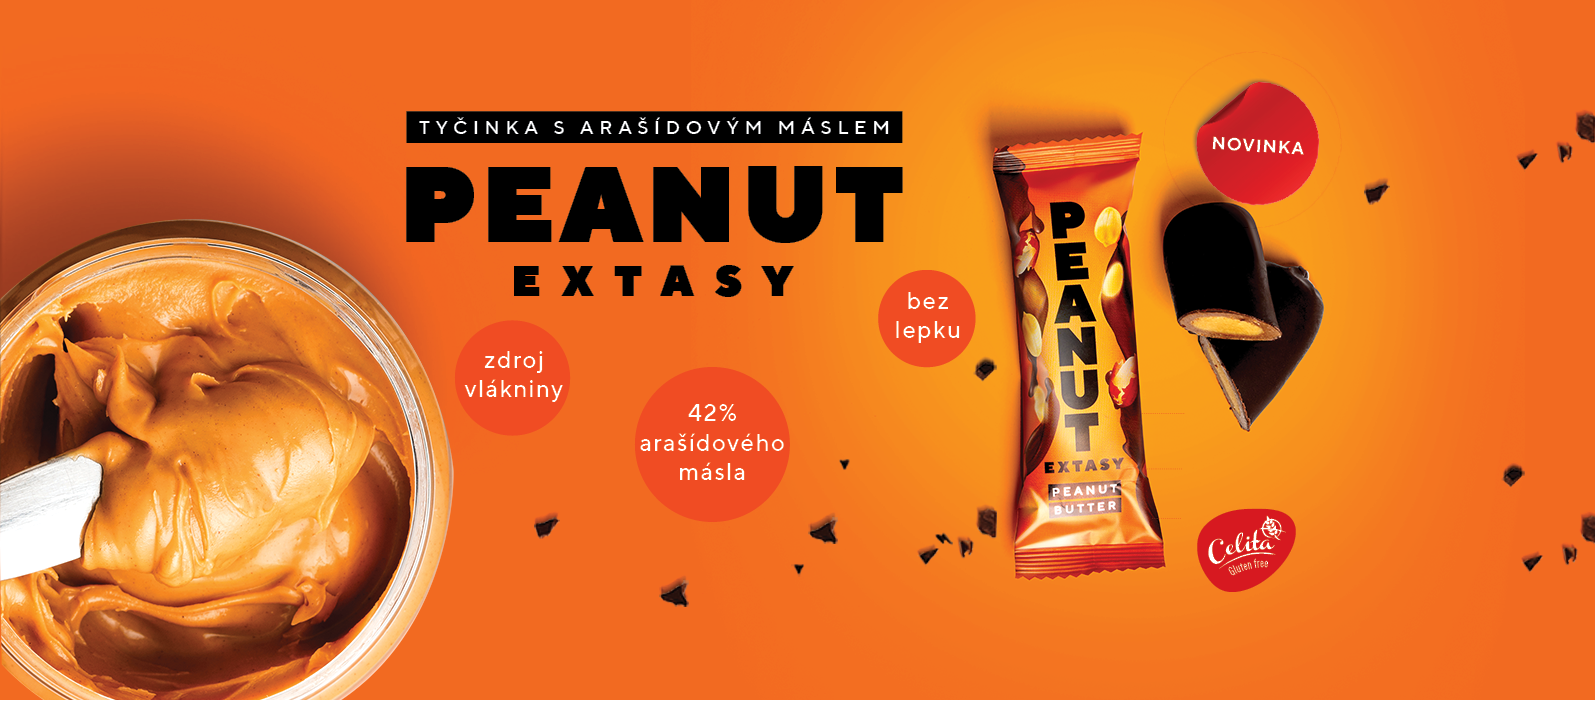 Peanut Extasy